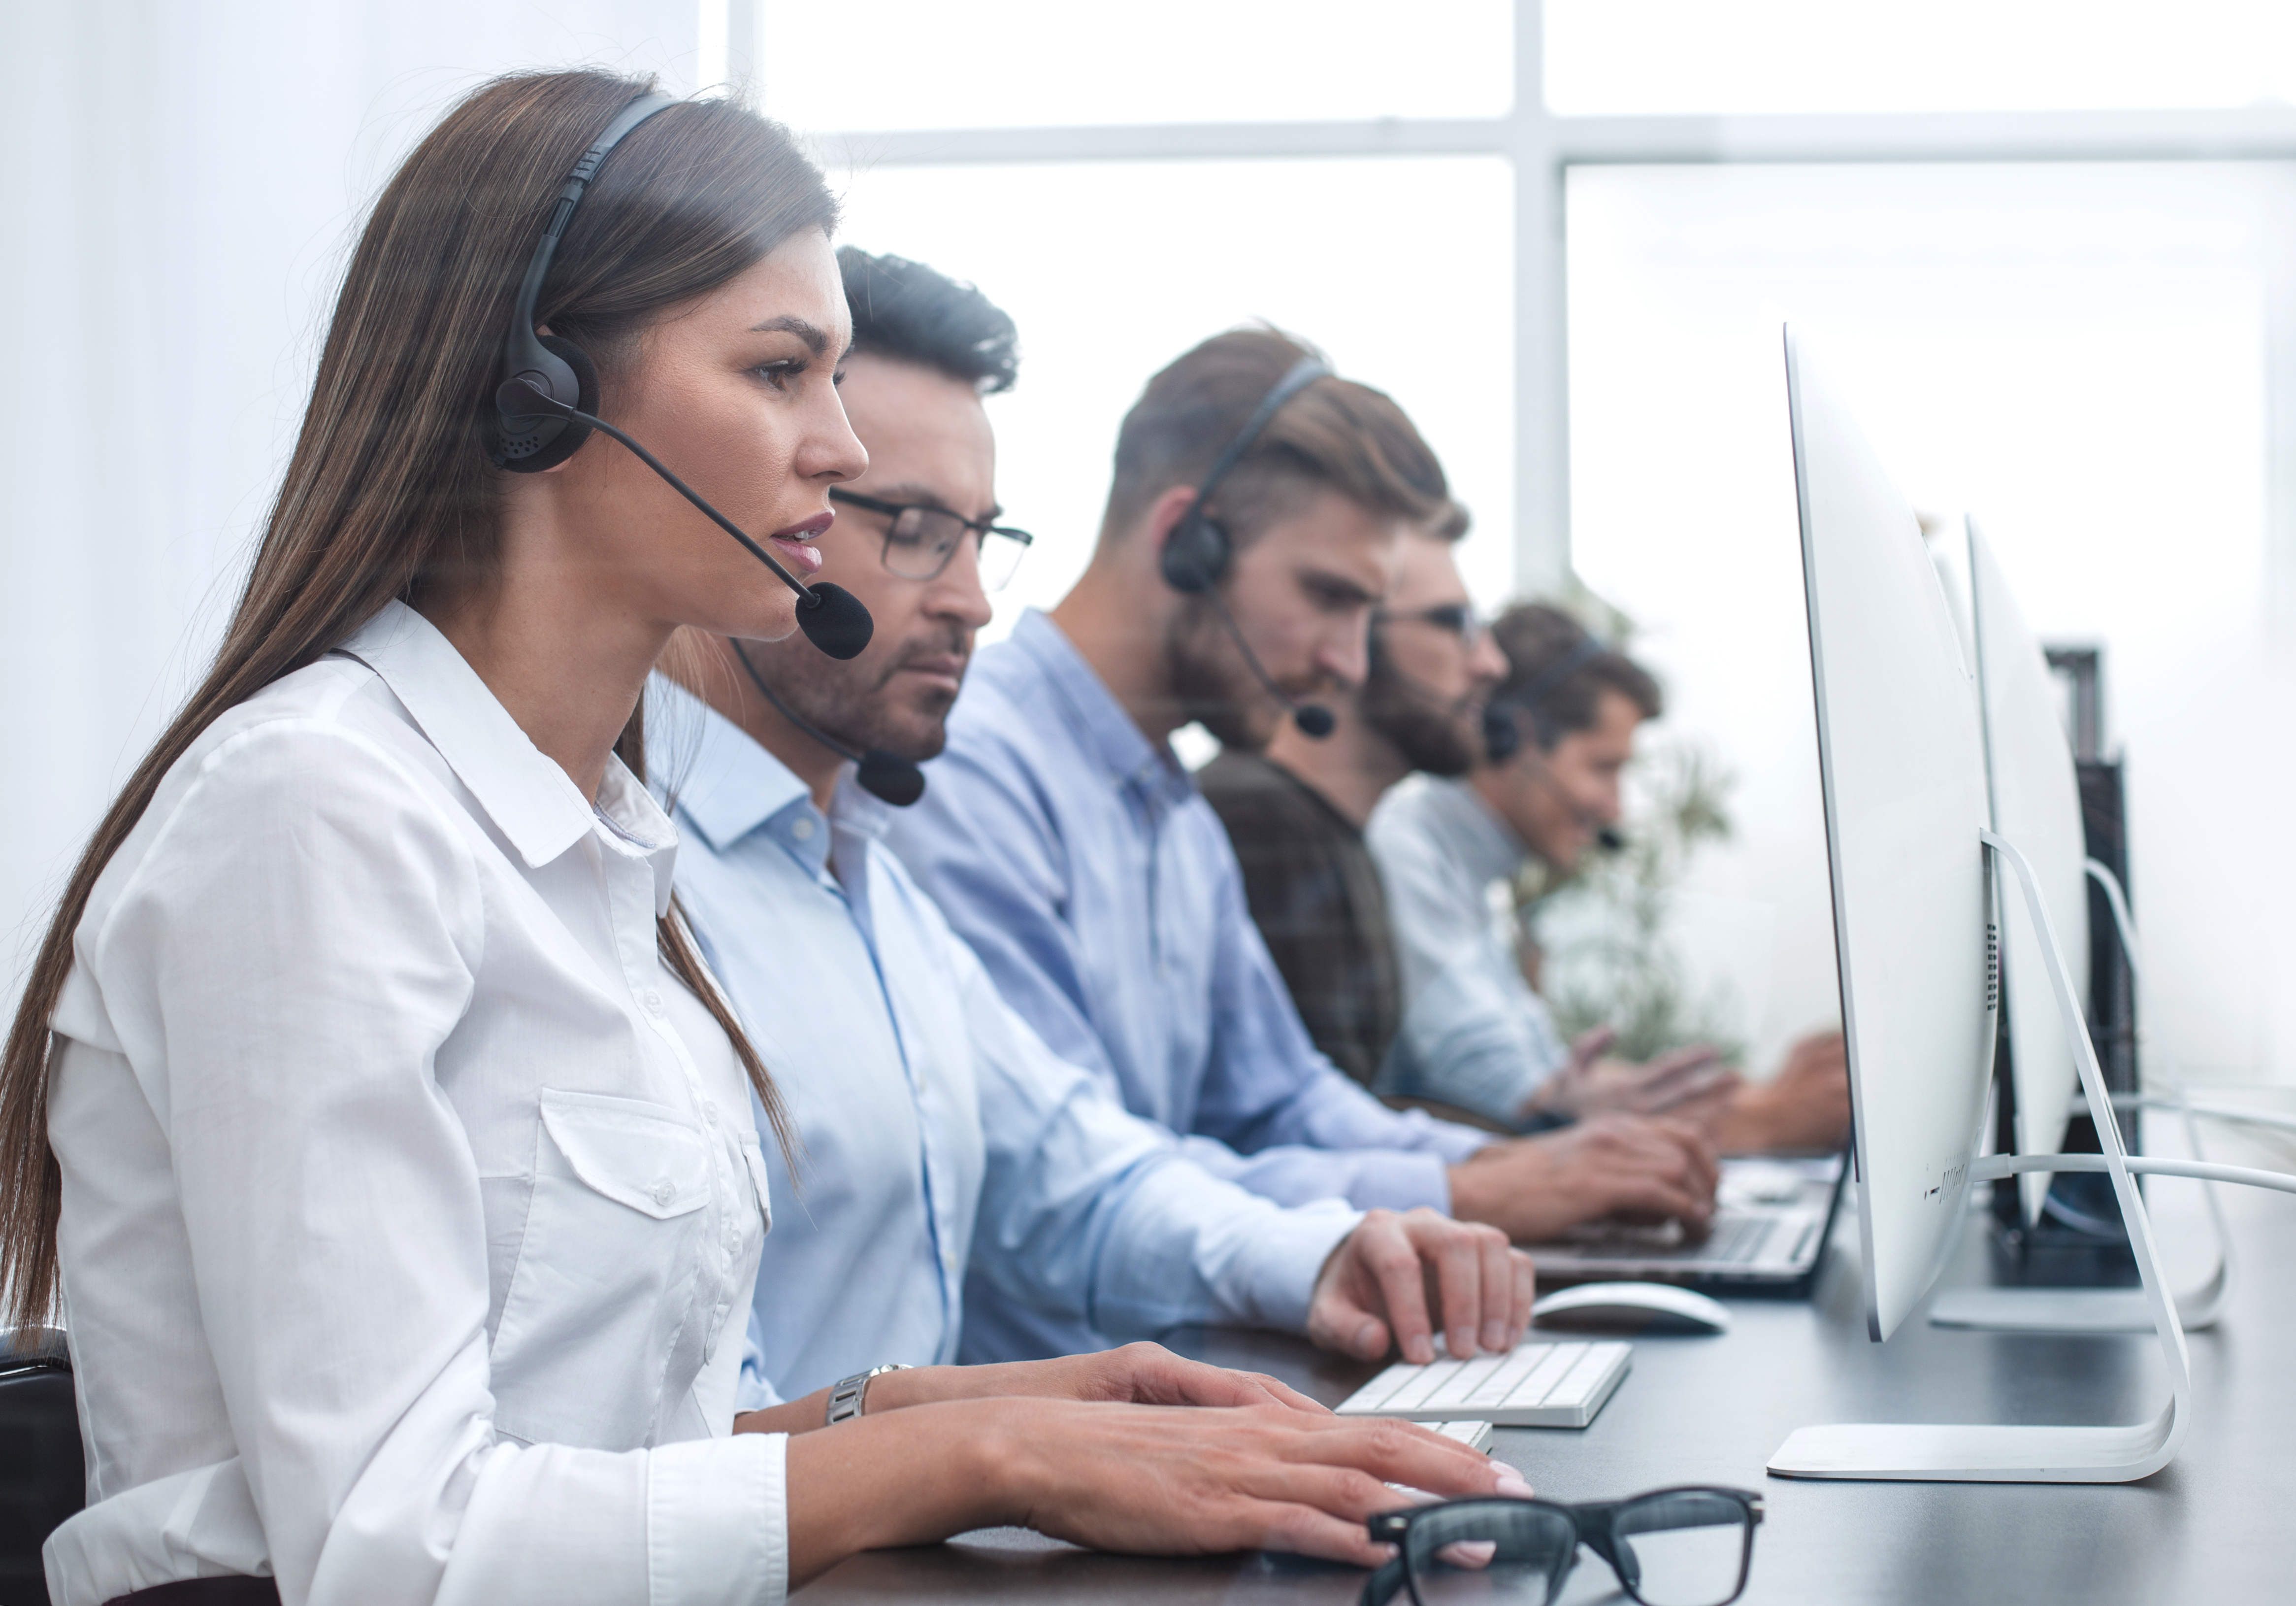 En 48 horas más se espera que más call centers puedan mover sus operaciones al teletrabajo. (Foto Prensa Libre: Shutterstock)